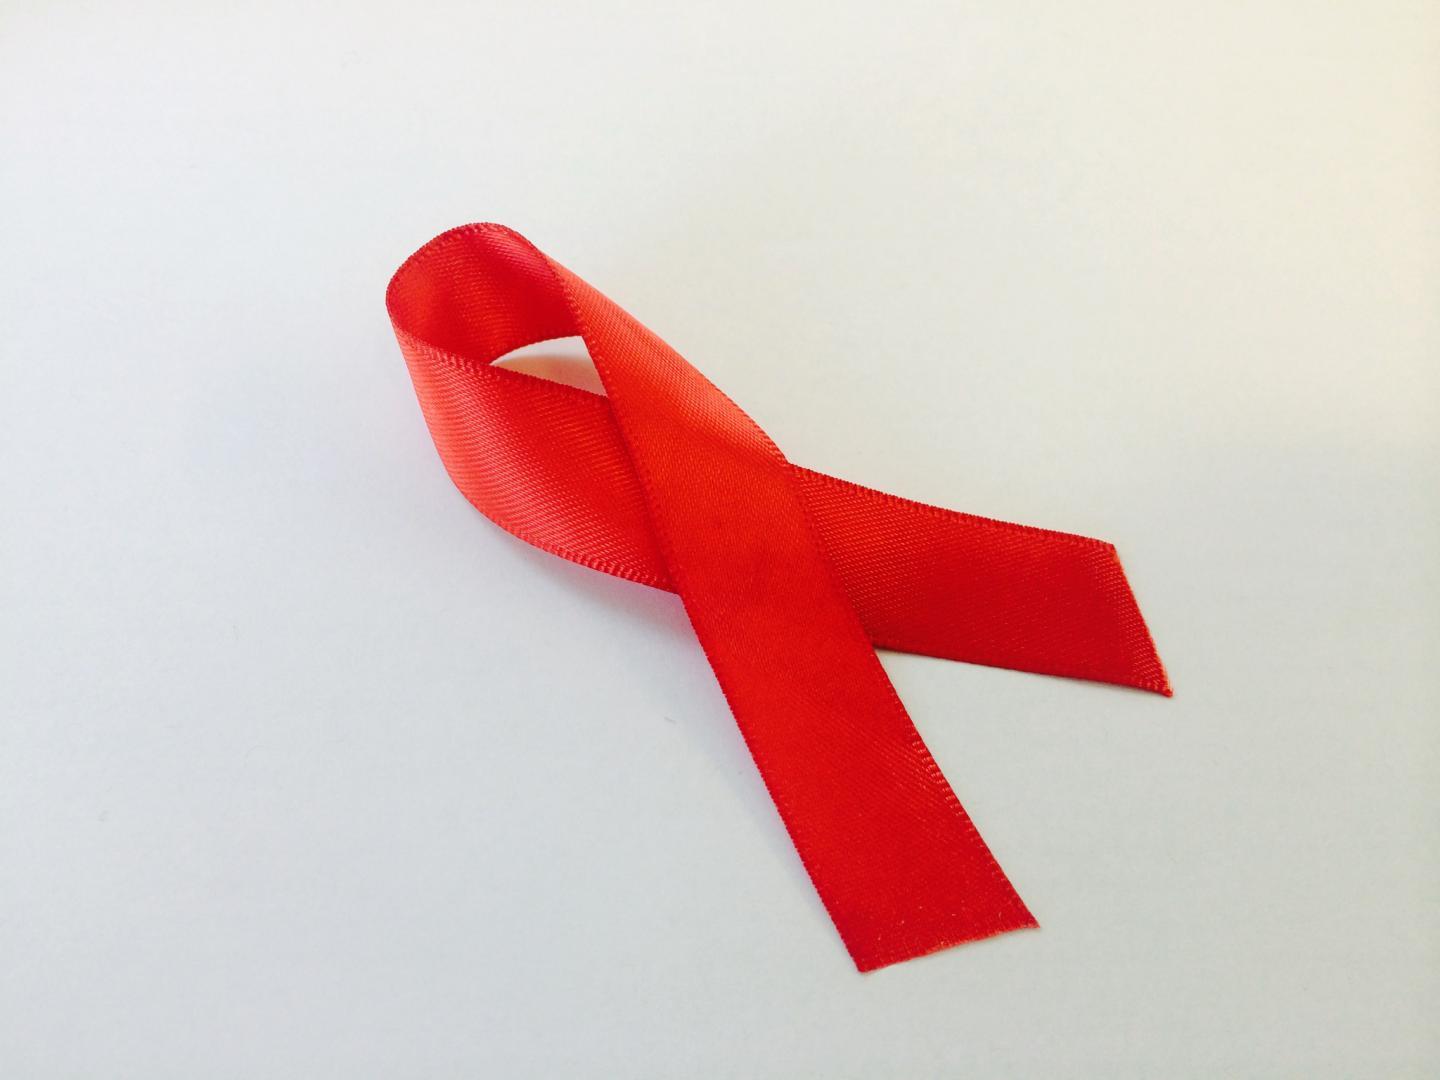 研究发现艾滋病毒感染者之间的肾脏移植是安全的